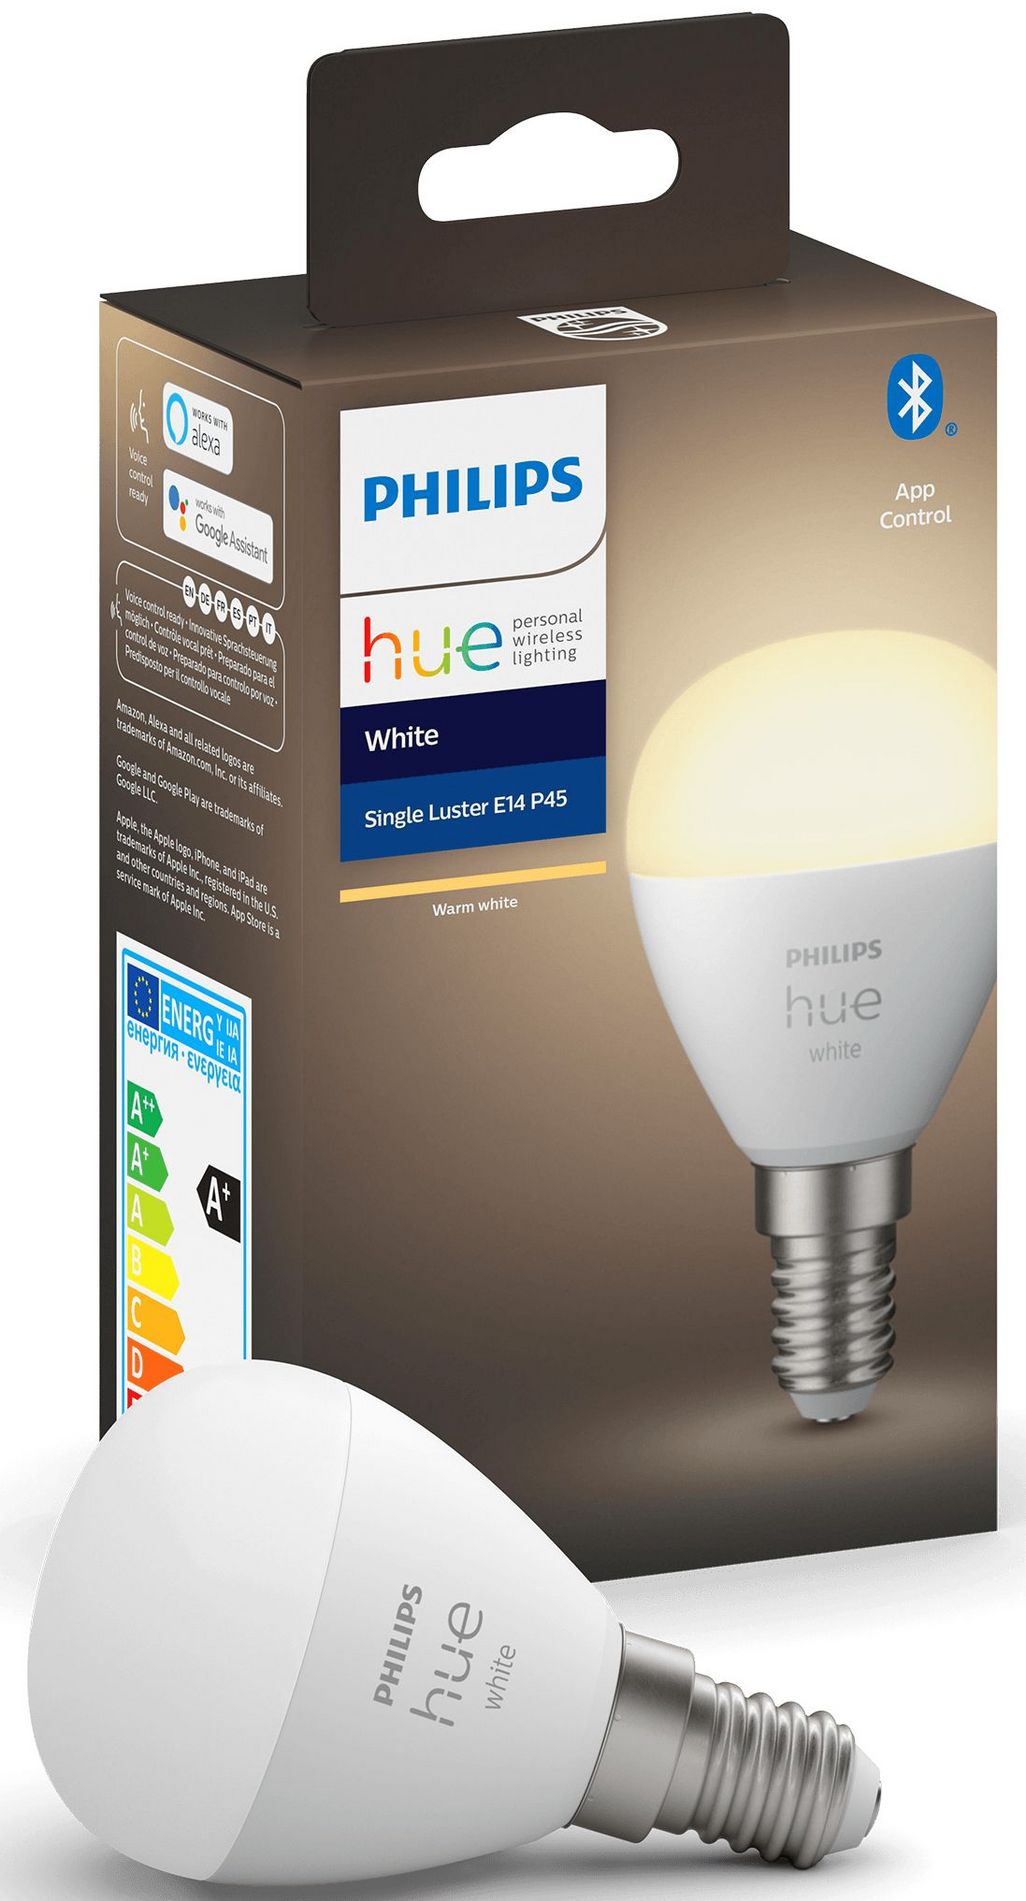 Die Mini-Tropfenlampe von Philips Hue.